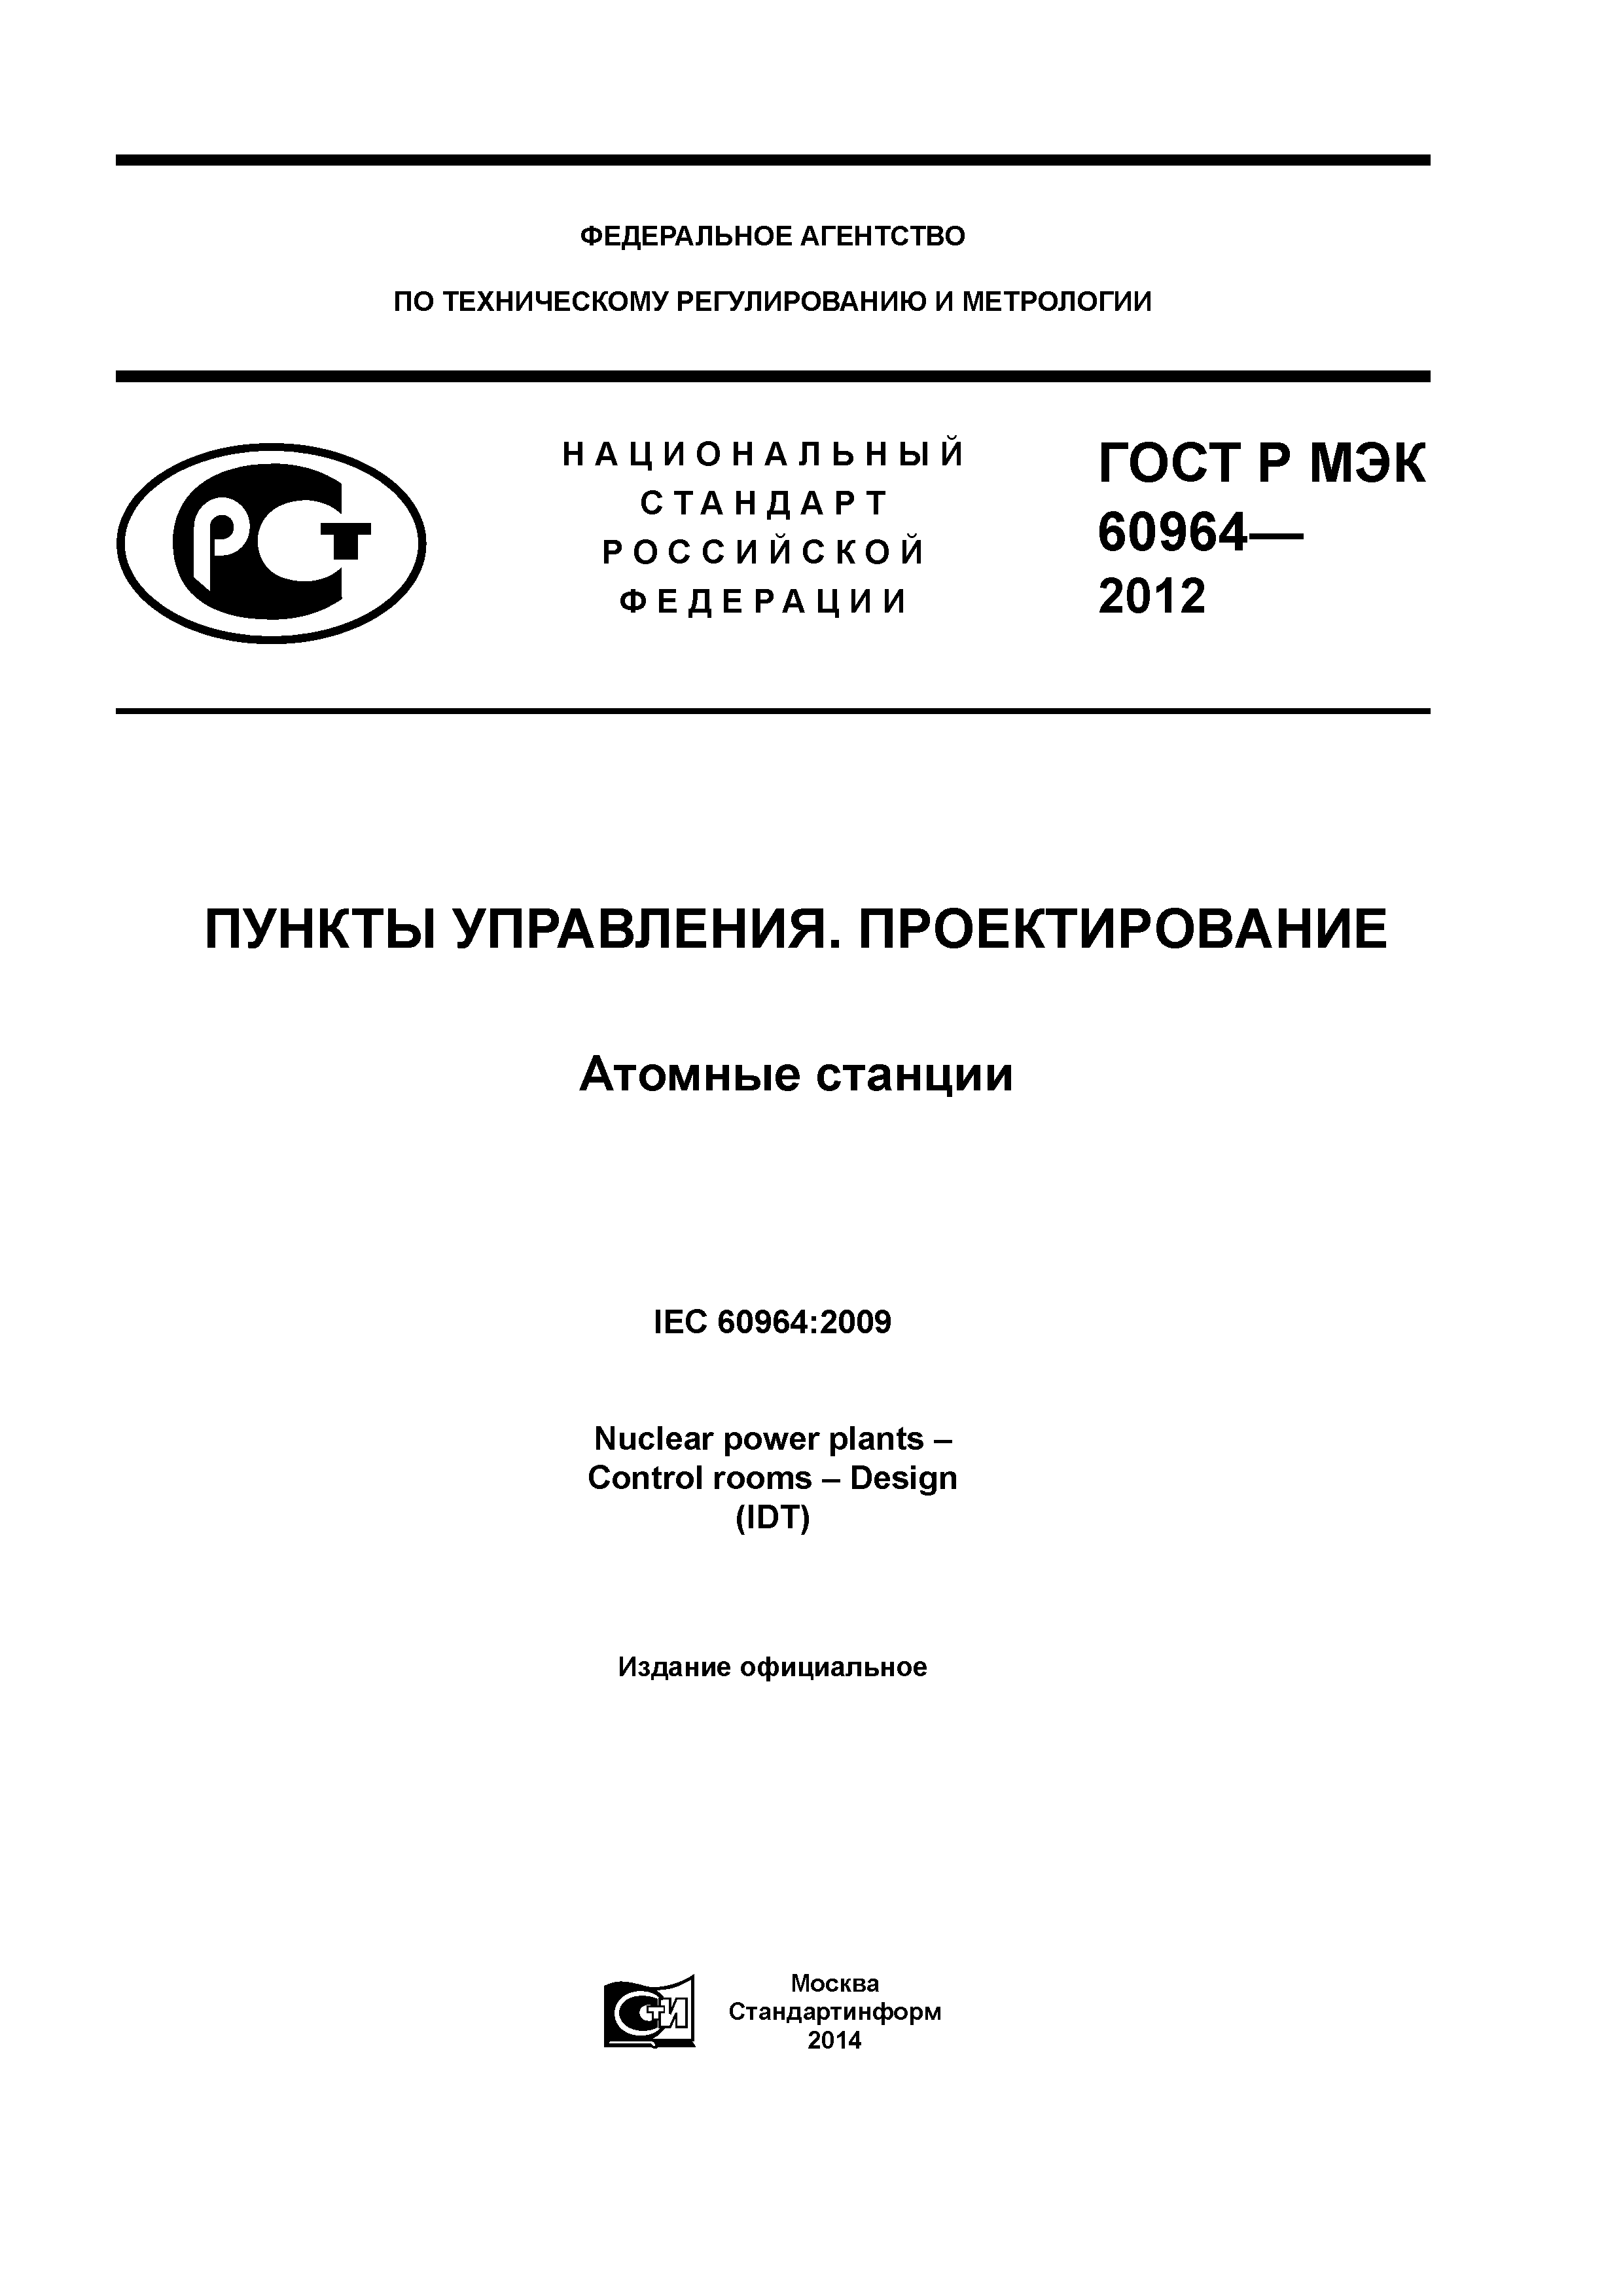 ГОСТ Р МЭК 60964-2012